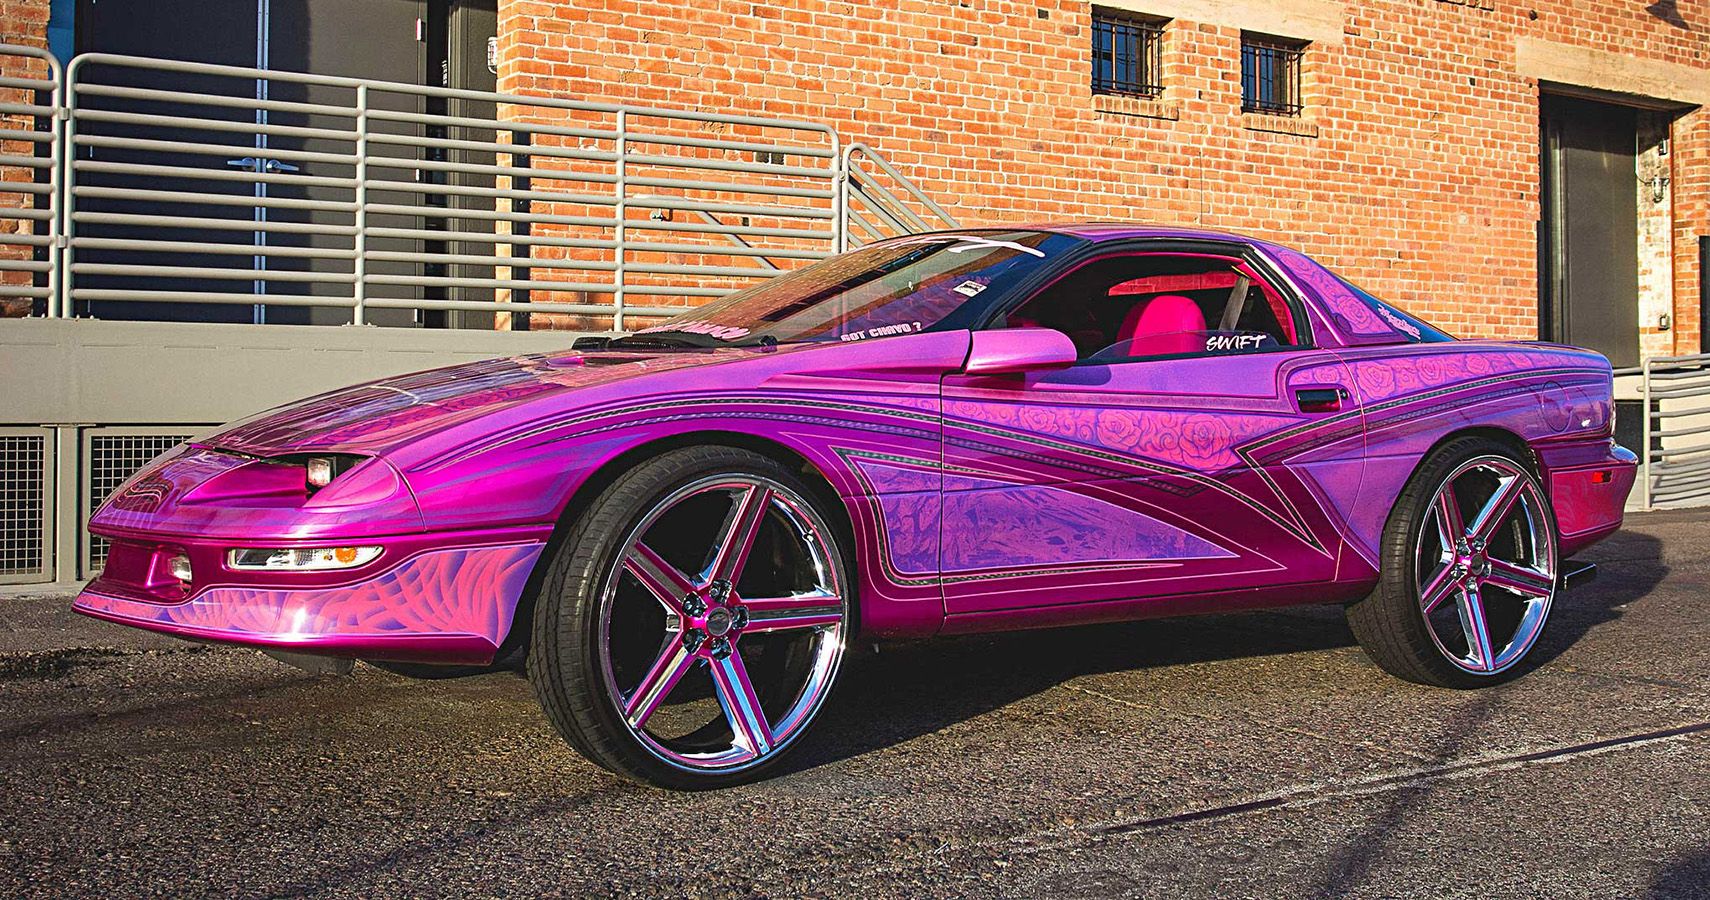 The Very “Swift” Camaro In Purple Neon